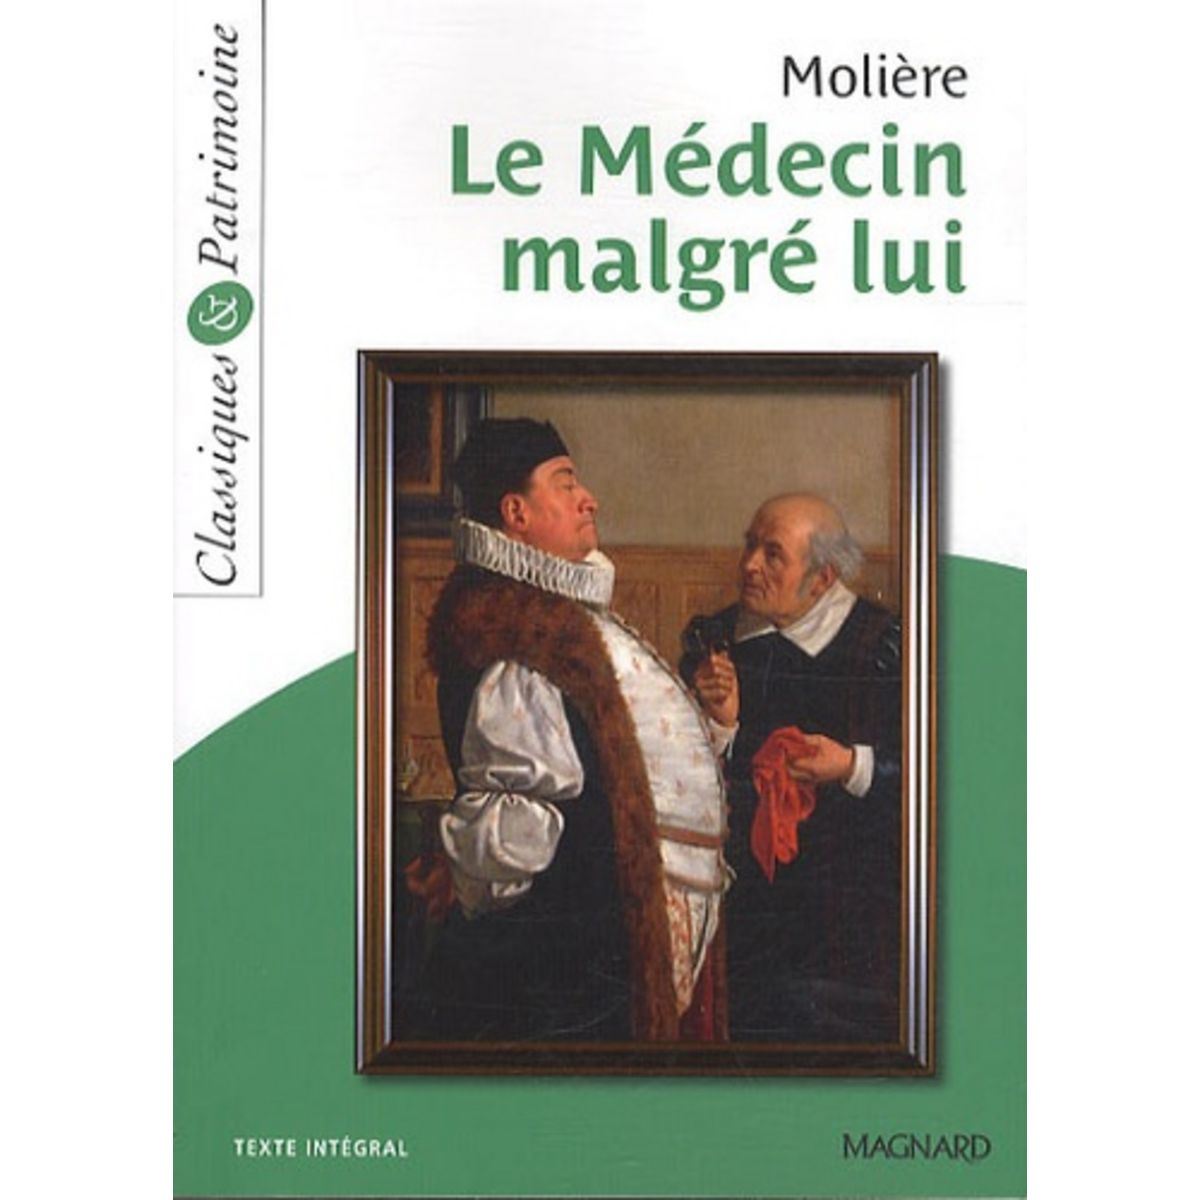  LE MEDECIN MALGRE LUI, Molière